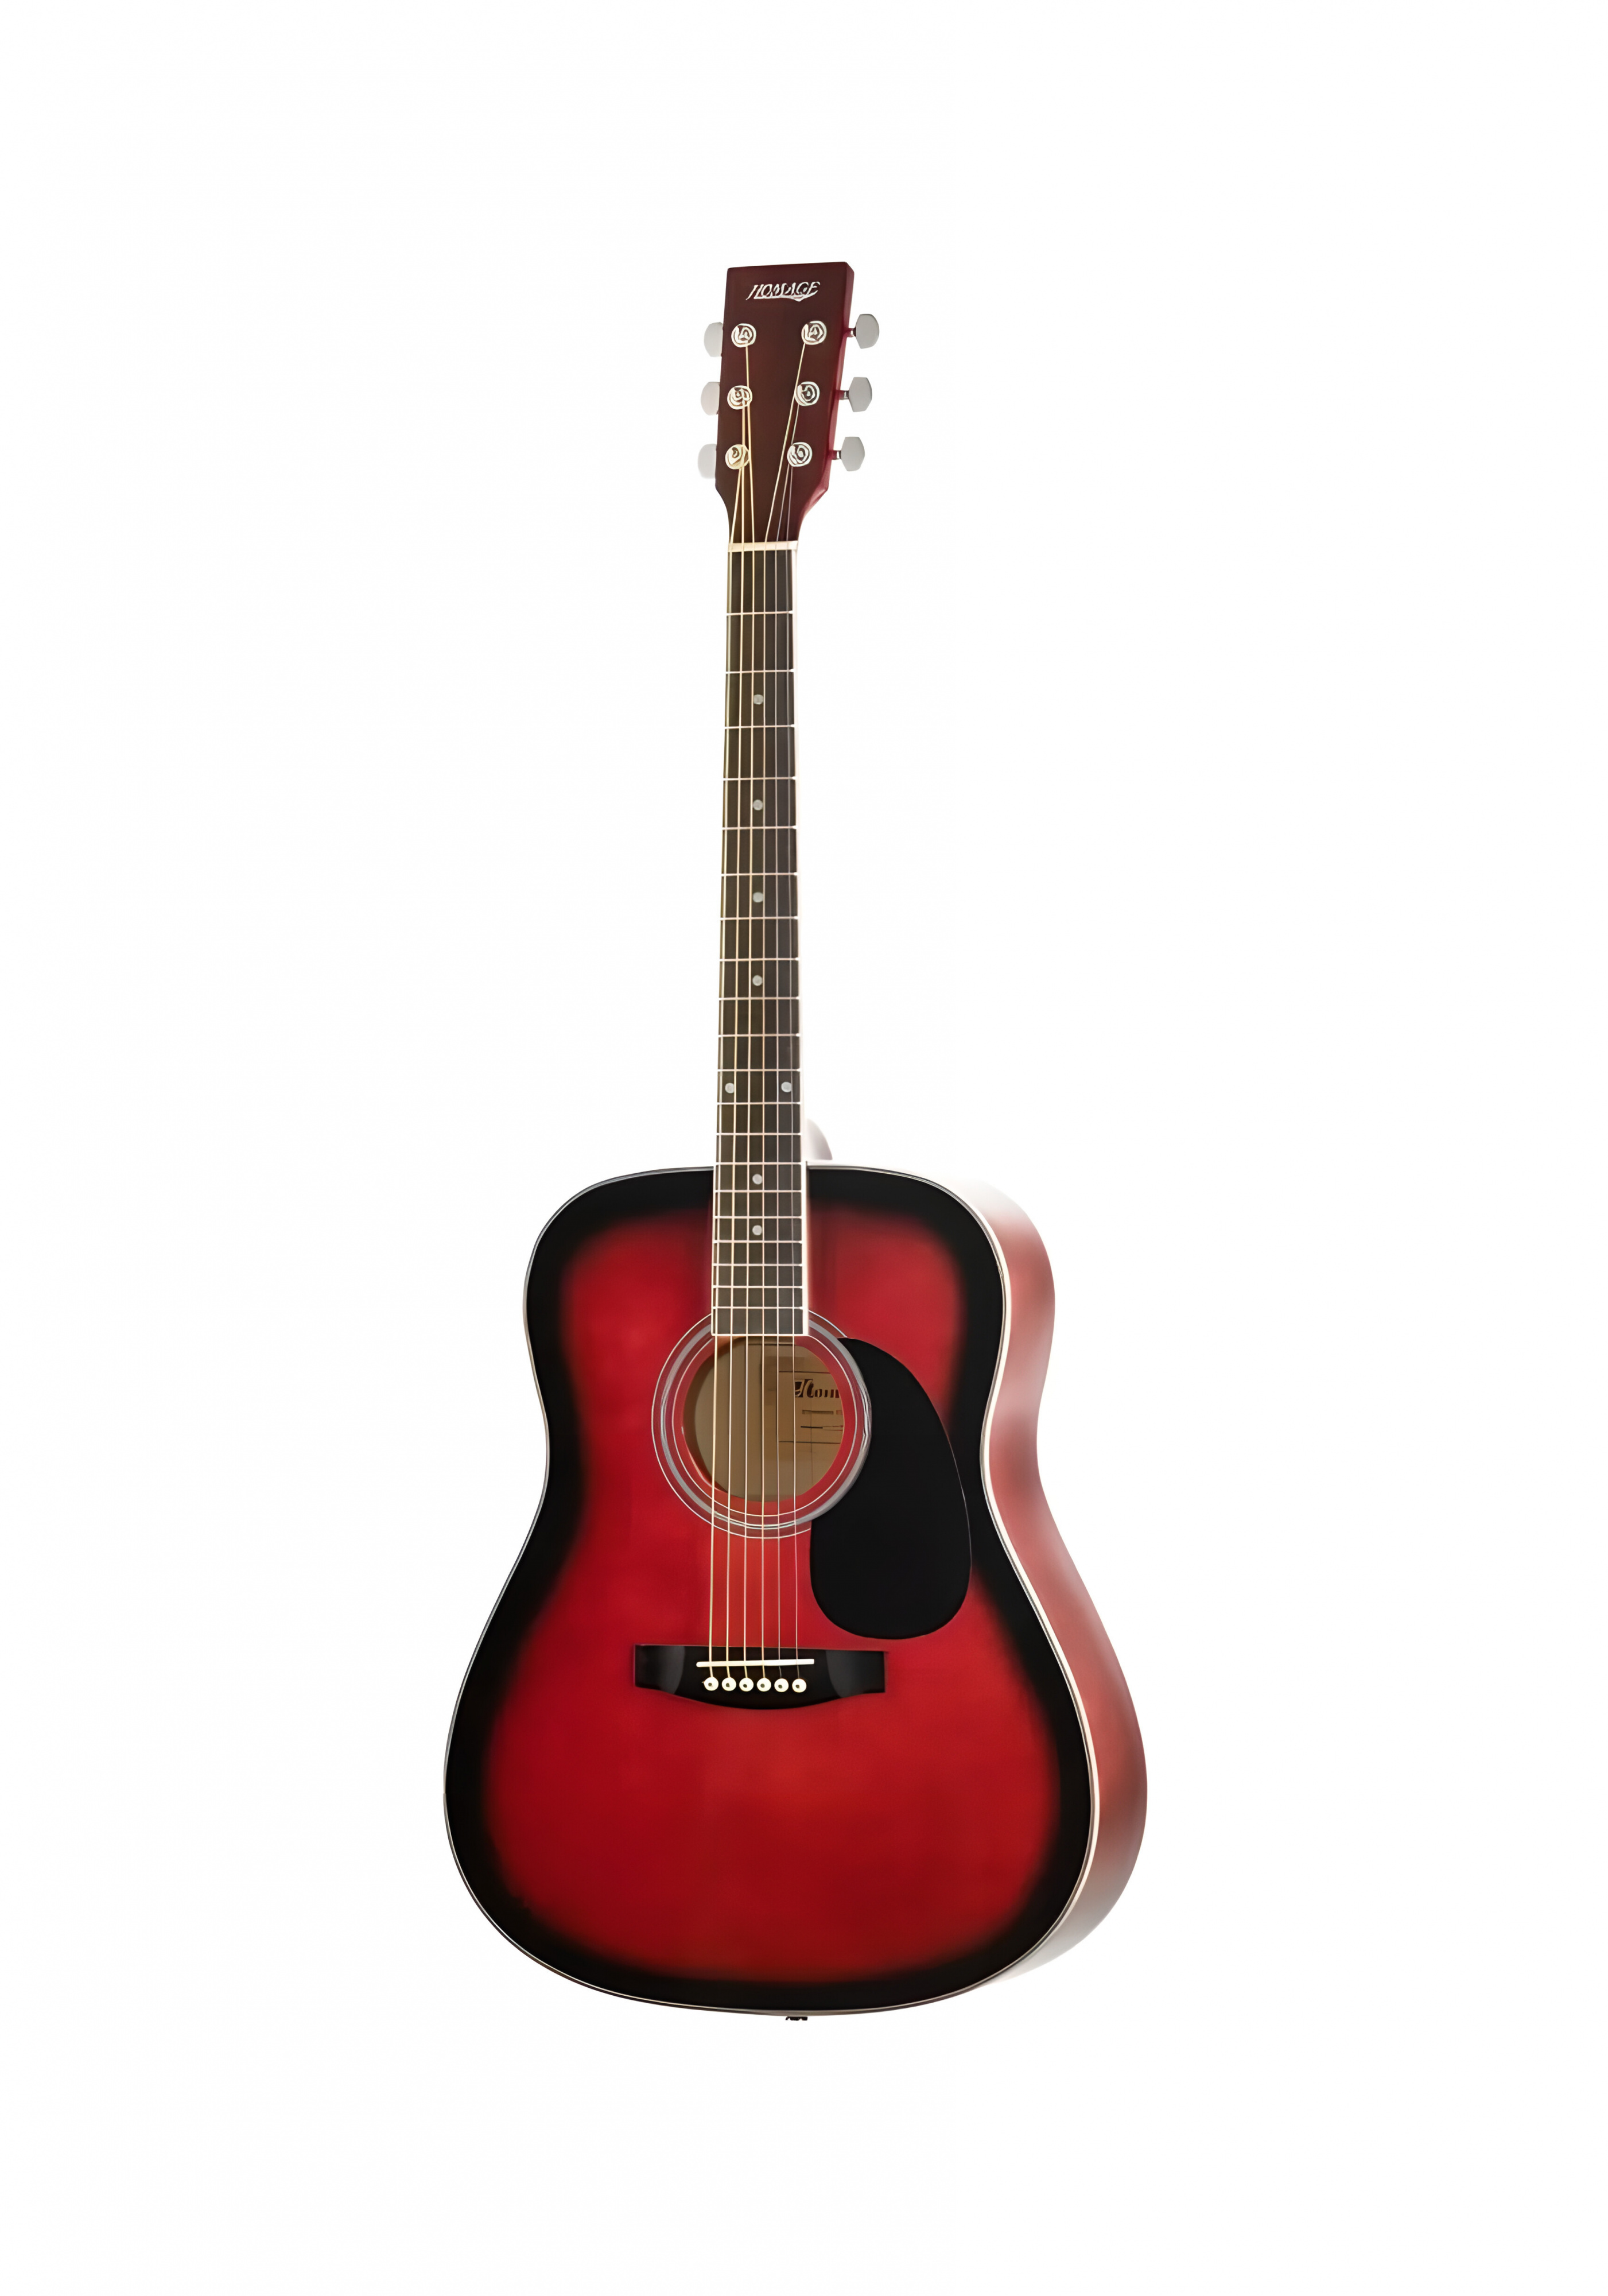 Акустические гитары Homage LF-4111-R гантельный гриф sportelite